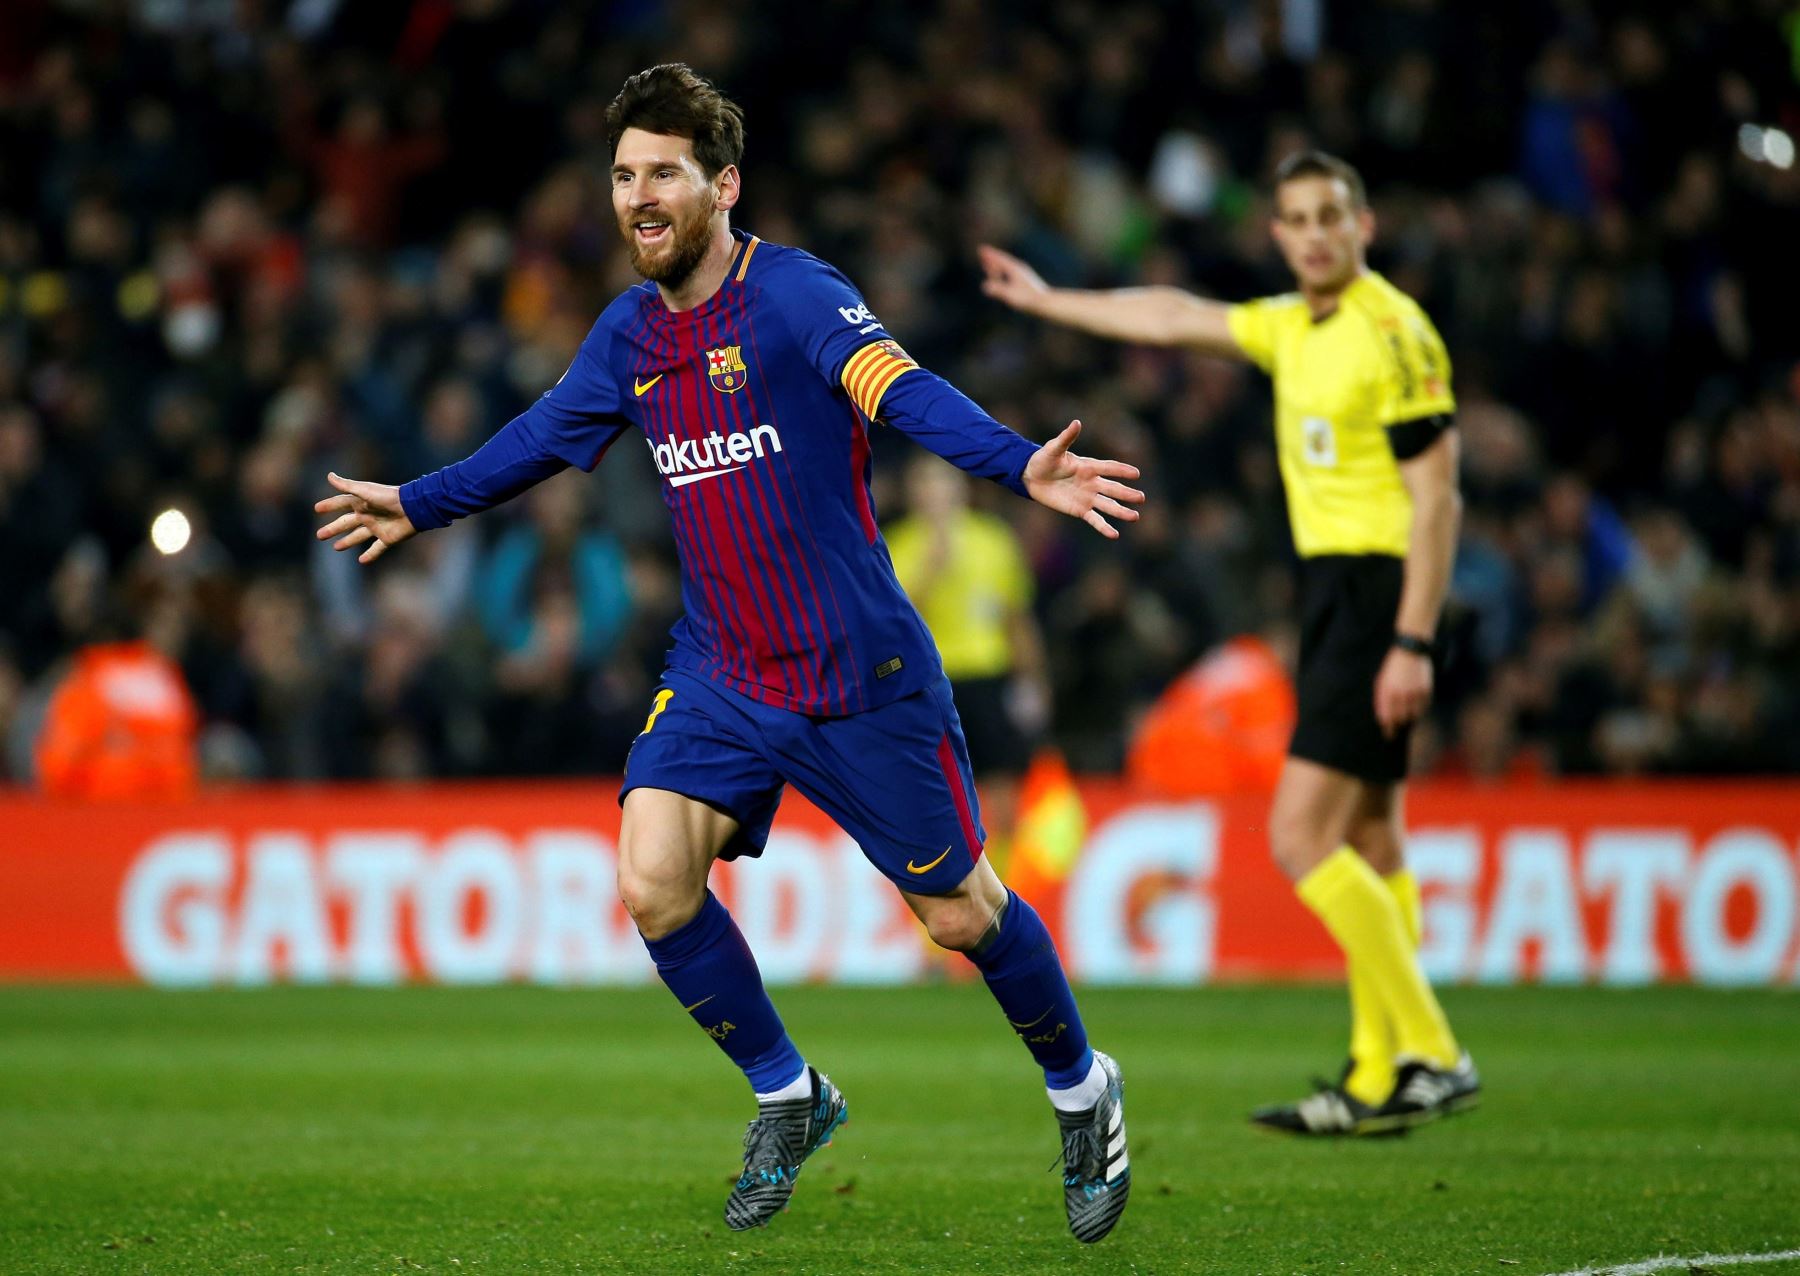 Messi celebra el tercer gol ante el Girona, durante el partido de Liga en Primera Divisón que se disputa esta noche en el Camp Nou, en Barcelona.Foto:EFE